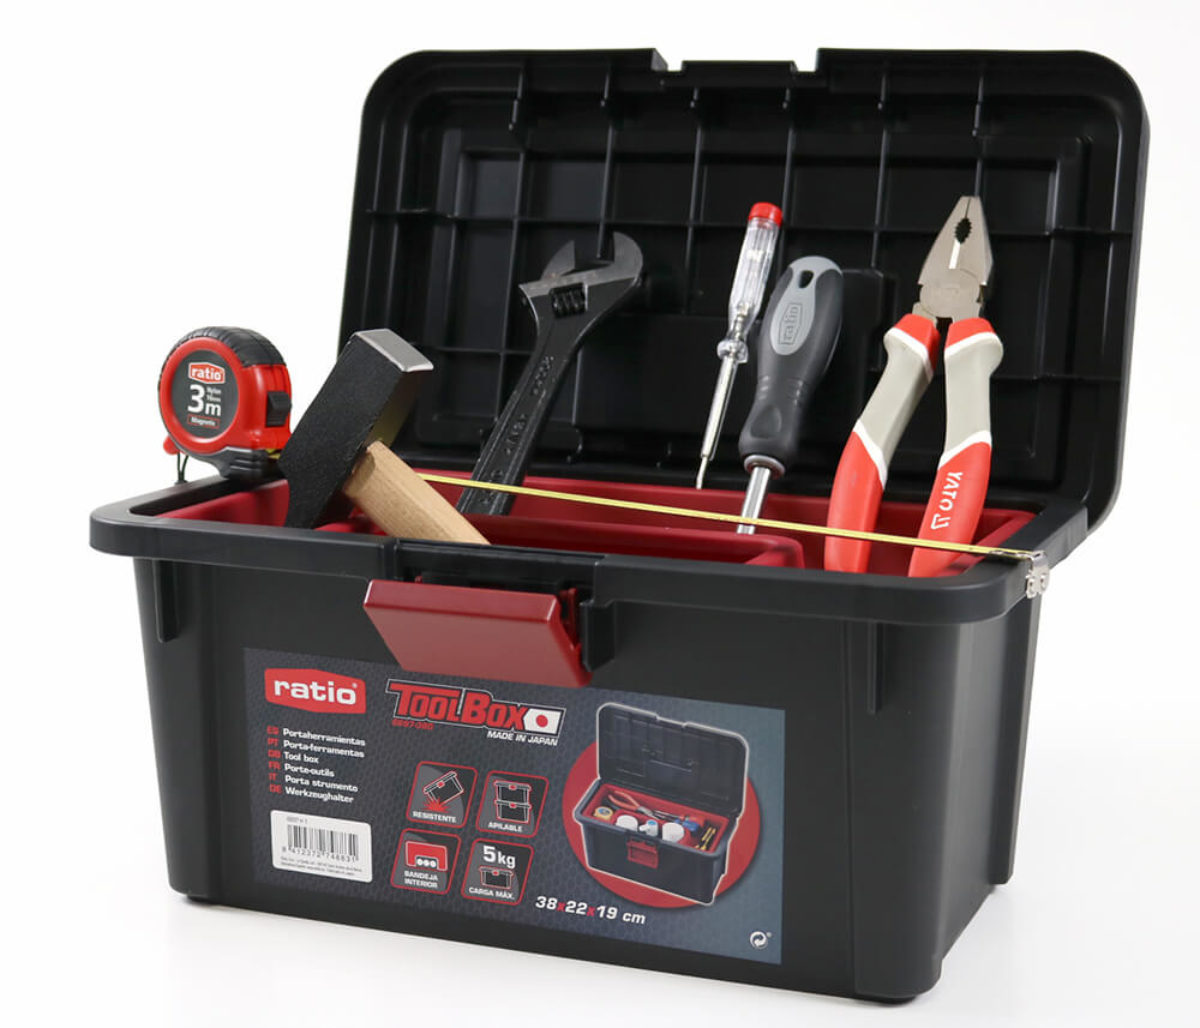 Caja con el mejor kit de herramientas definitivo para tu taller de